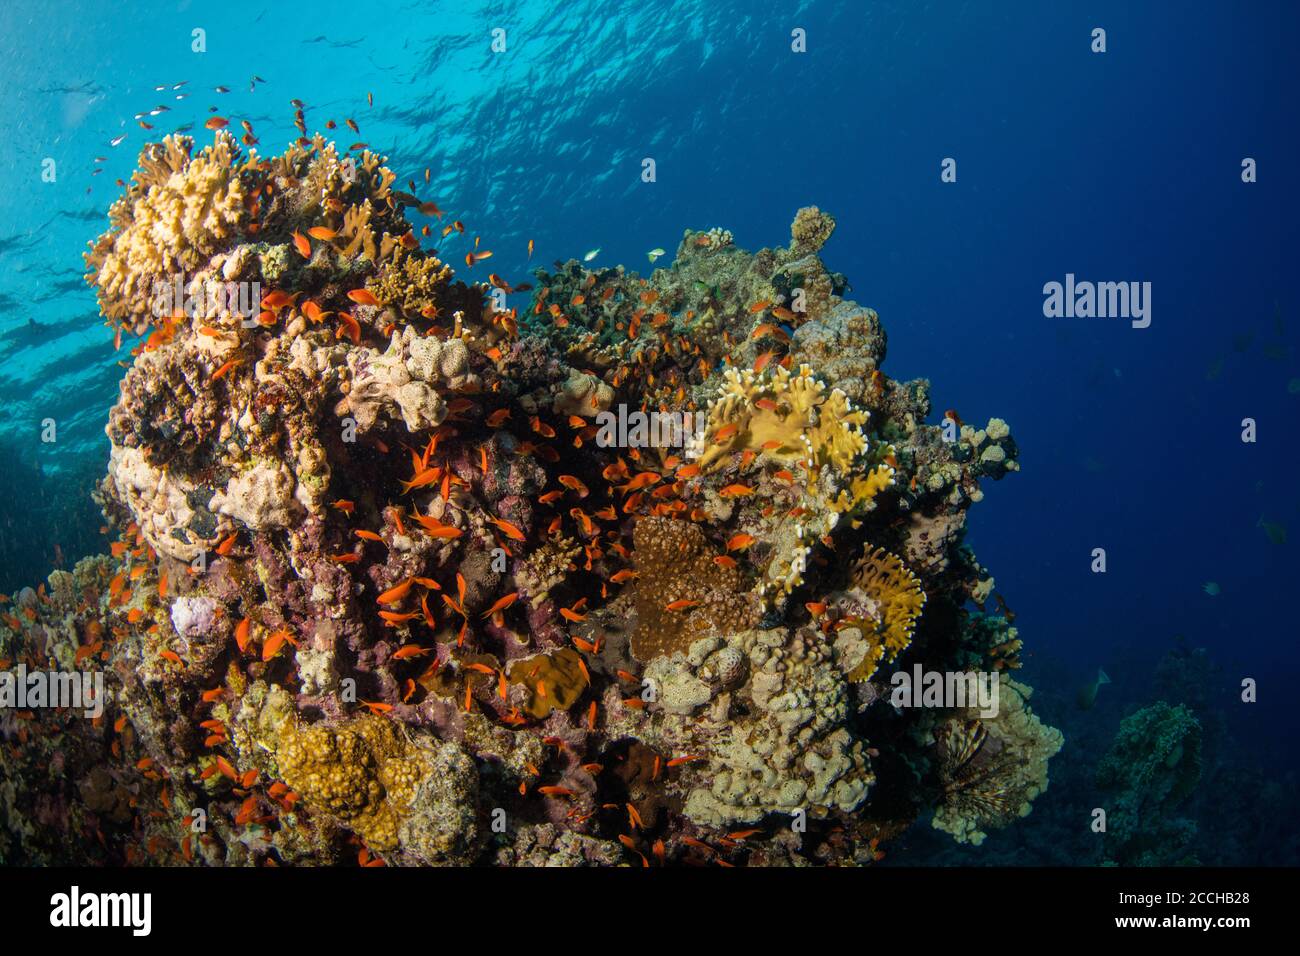 Bellissima barriera corallina con foca. Foto del paesaggio subacqueo con pesci e vita marina Foto Stock